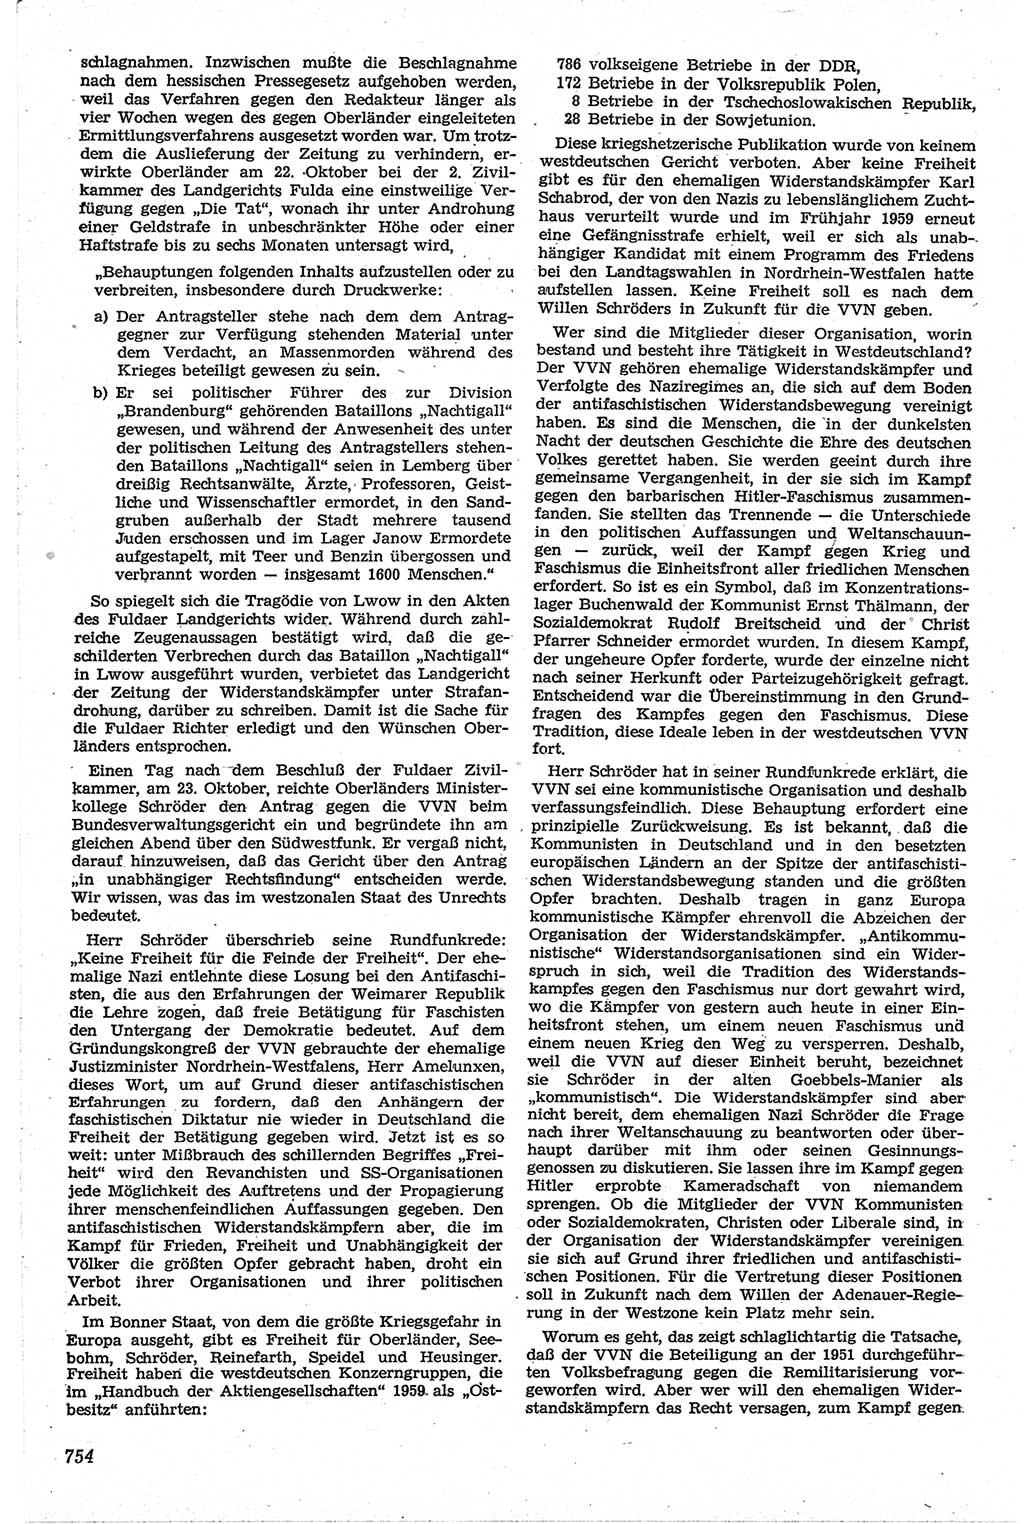 Neue Justiz (NJ), Zeitschrift für Recht und Rechtswissenschaft [Deutsche Demokratische Republik (DDR)], 13. Jahrgang 1959, Seite 754 (NJ DDR 1959, S. 754)